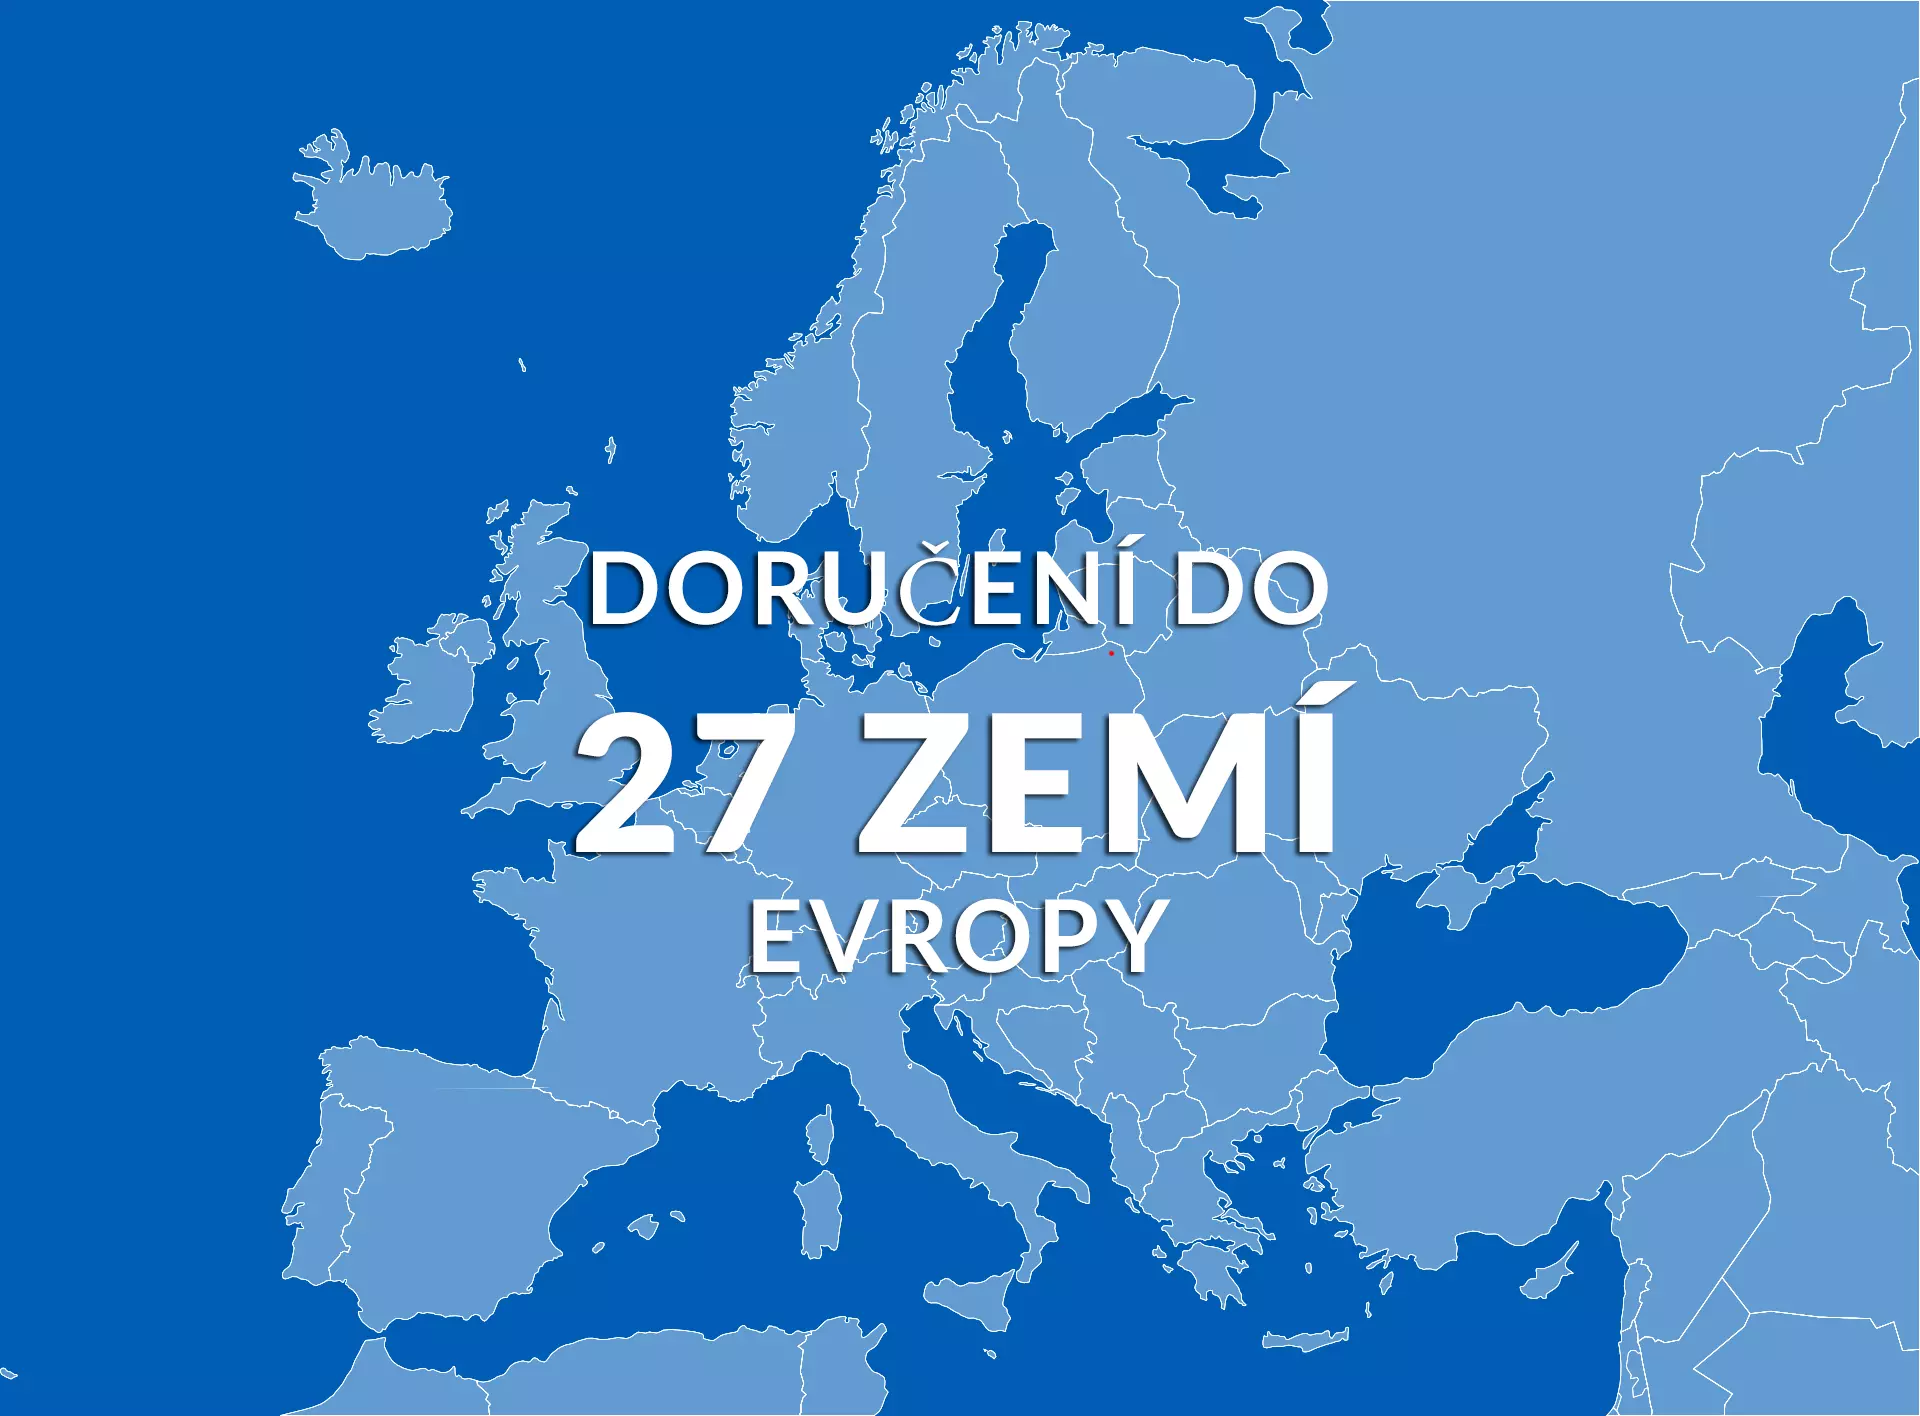 Ráfky dodáváme do 27 zemí Evropy